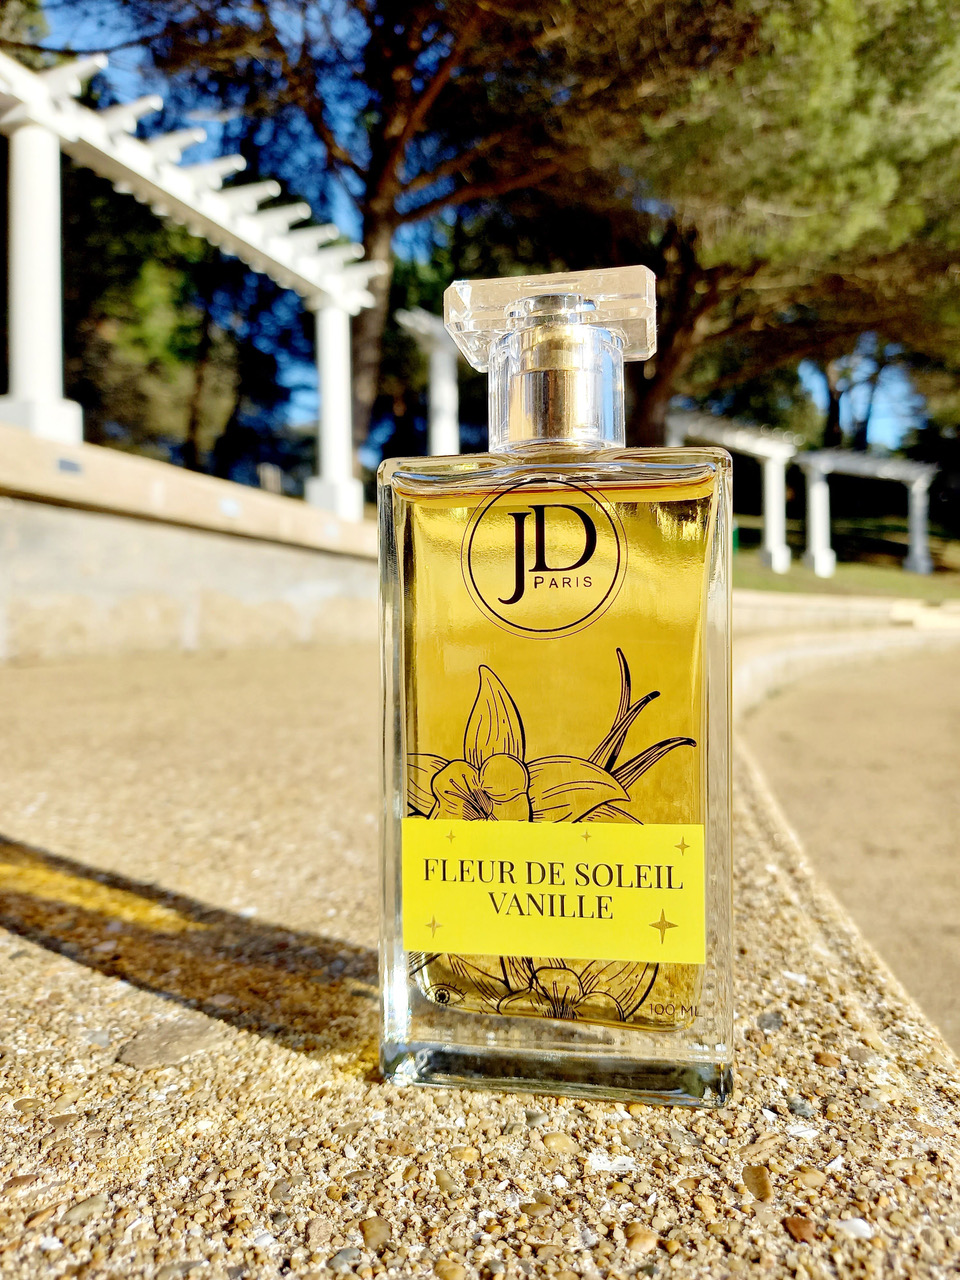 Fleur de soleil vanille by JD Paris - 100 ml